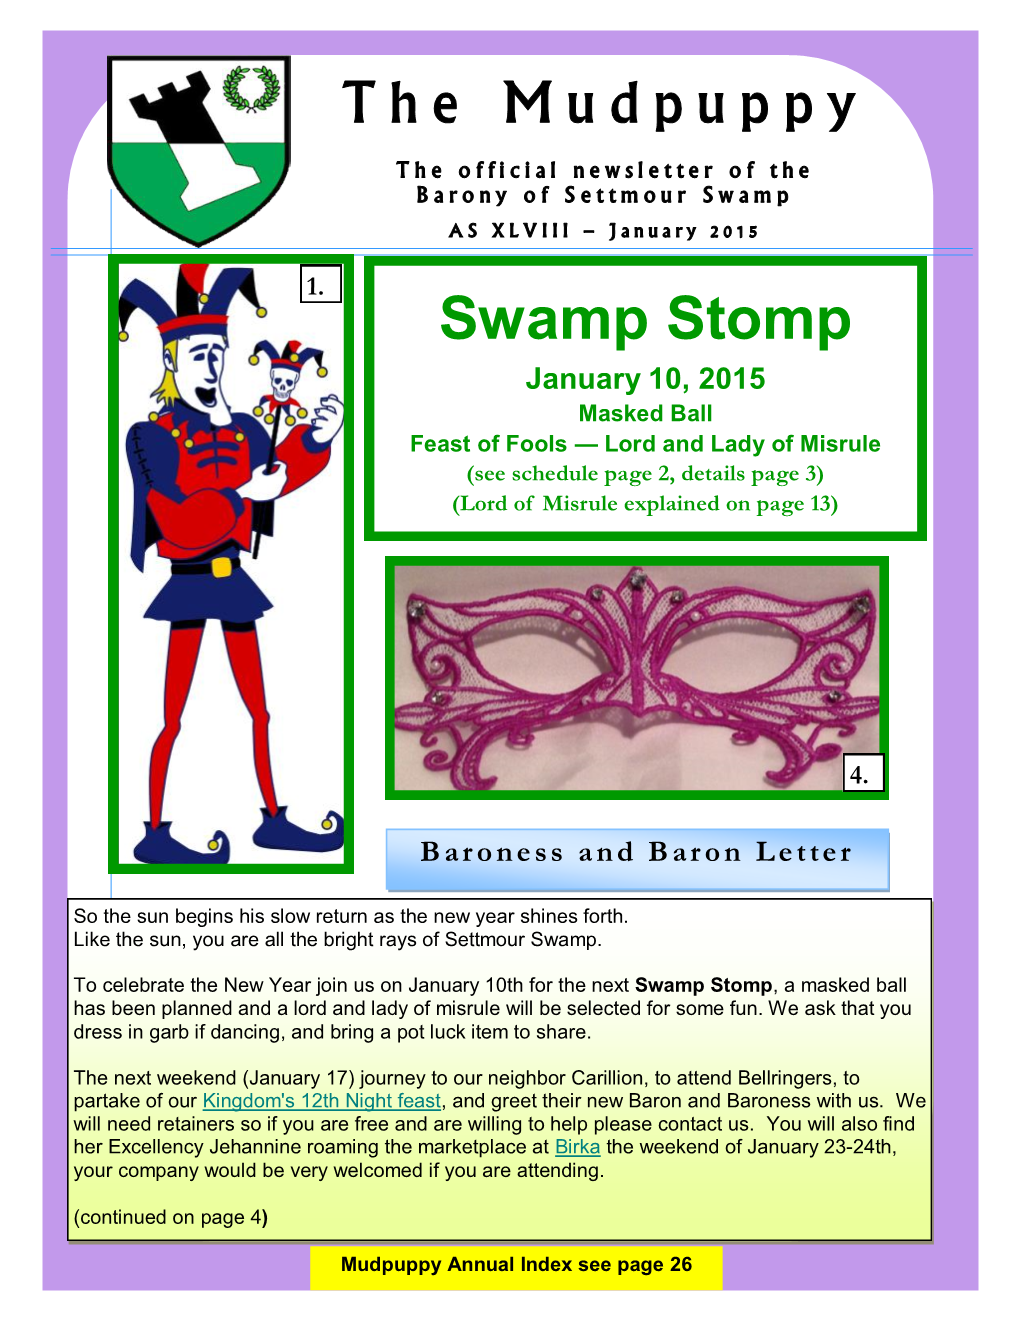 The Mudpuppy Swamp Stomp